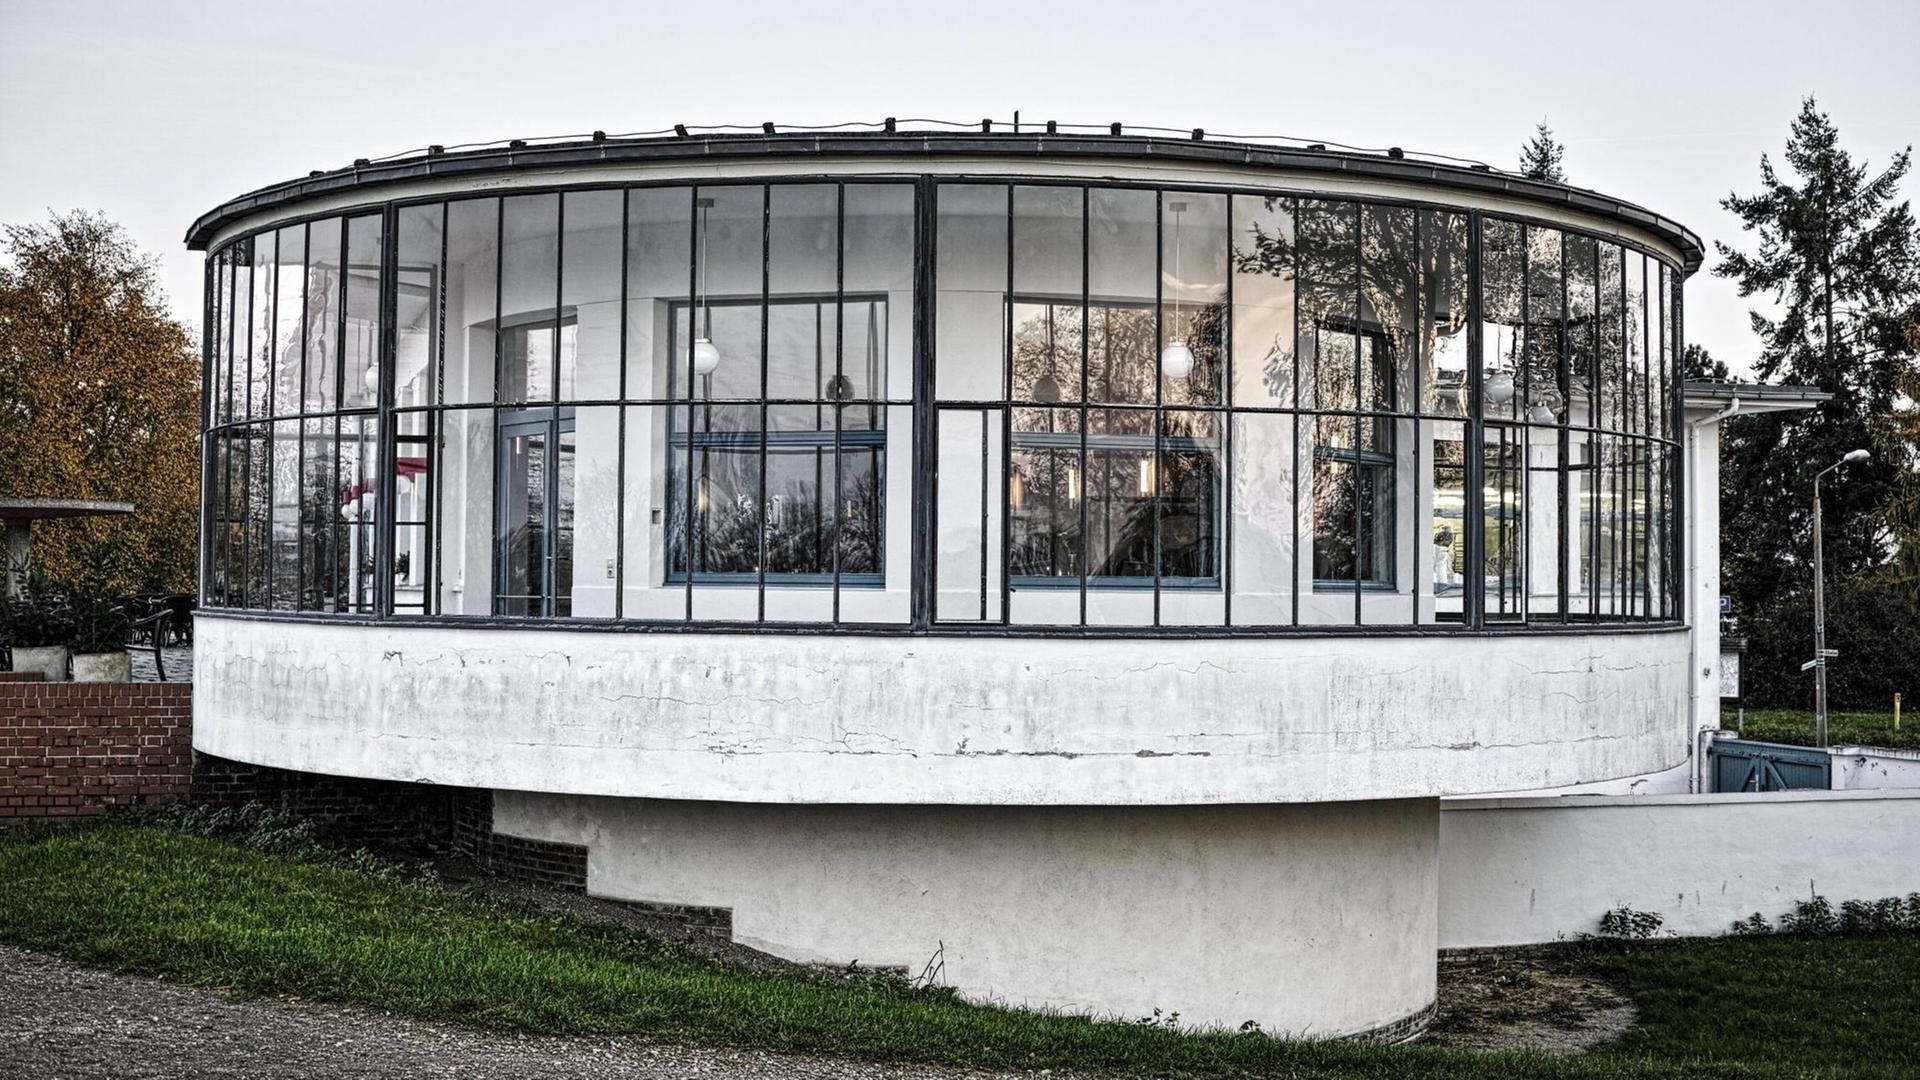 Der gläserne Rundbau, auch Kornhaus genannt, vom Bauhausarchitekten Carl Fieger steht in Dessau